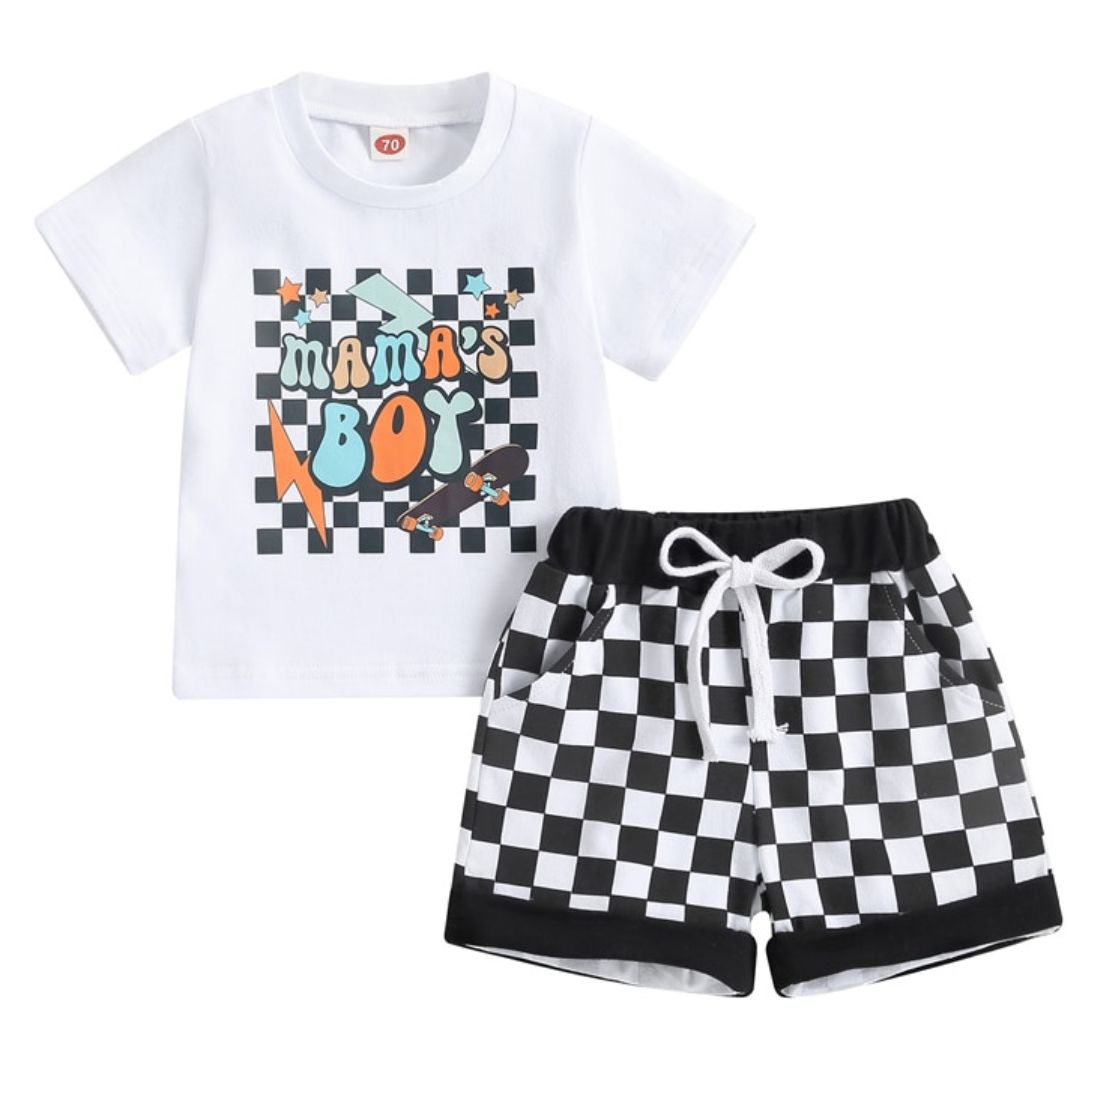 Checkered Mamas Boy Baby Clothing Set